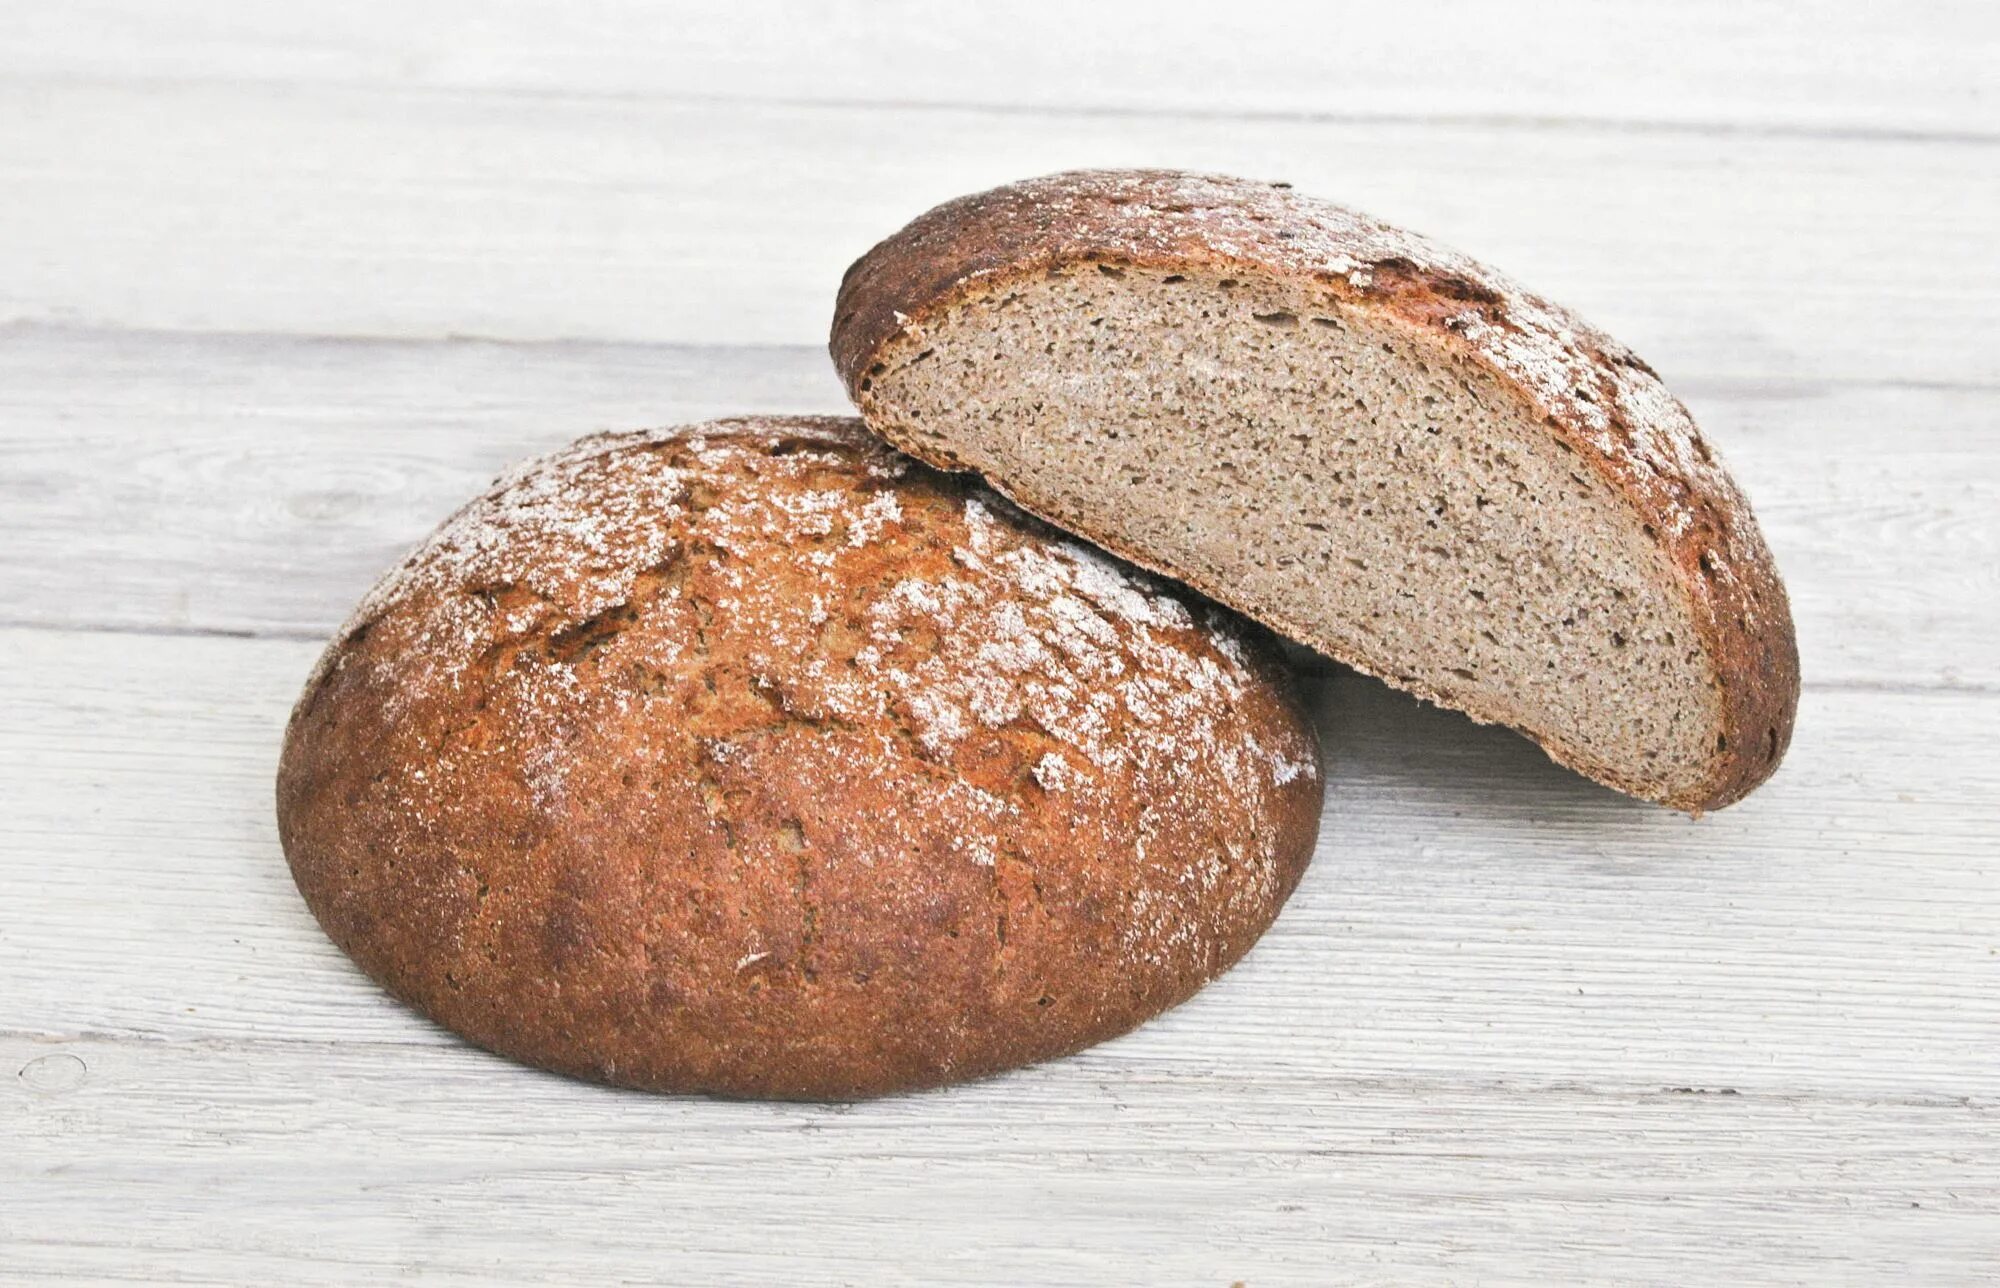 Вес ржаного хлеба. Хлеб ржанопшеничный поддовый. Хлеб ржано-пшеничный подовый. Хлеб пшеничный деревенский подовый. Хлеб пшеничный отрубной.